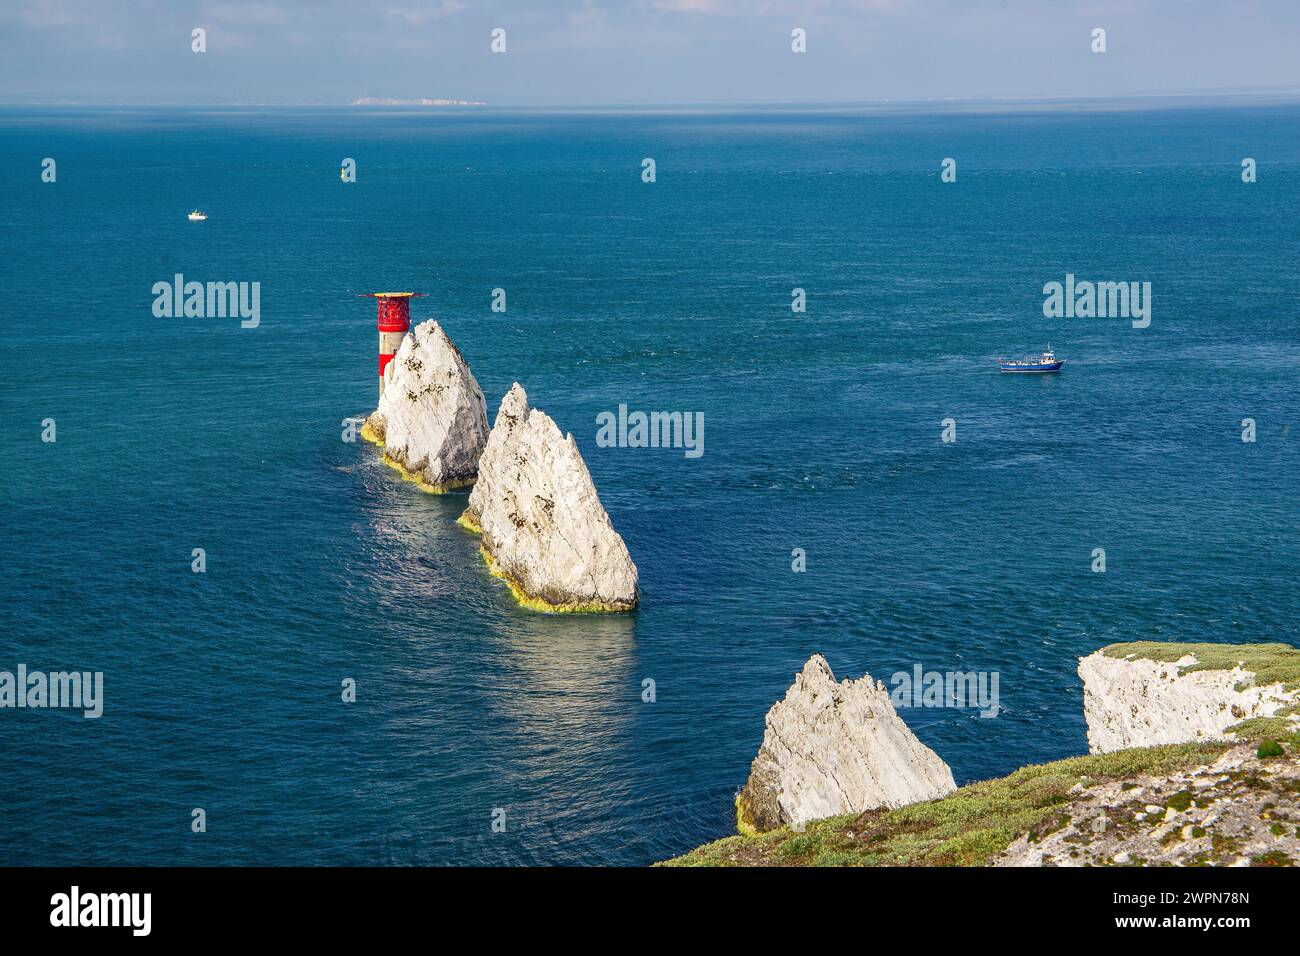 Formation rocheuse 'The Needles' sur la pointe sud-ouest de l'île à Alum Bay, île de Wight, Hampshire, Grande-Bretagne, Angleterre Banque D'Images